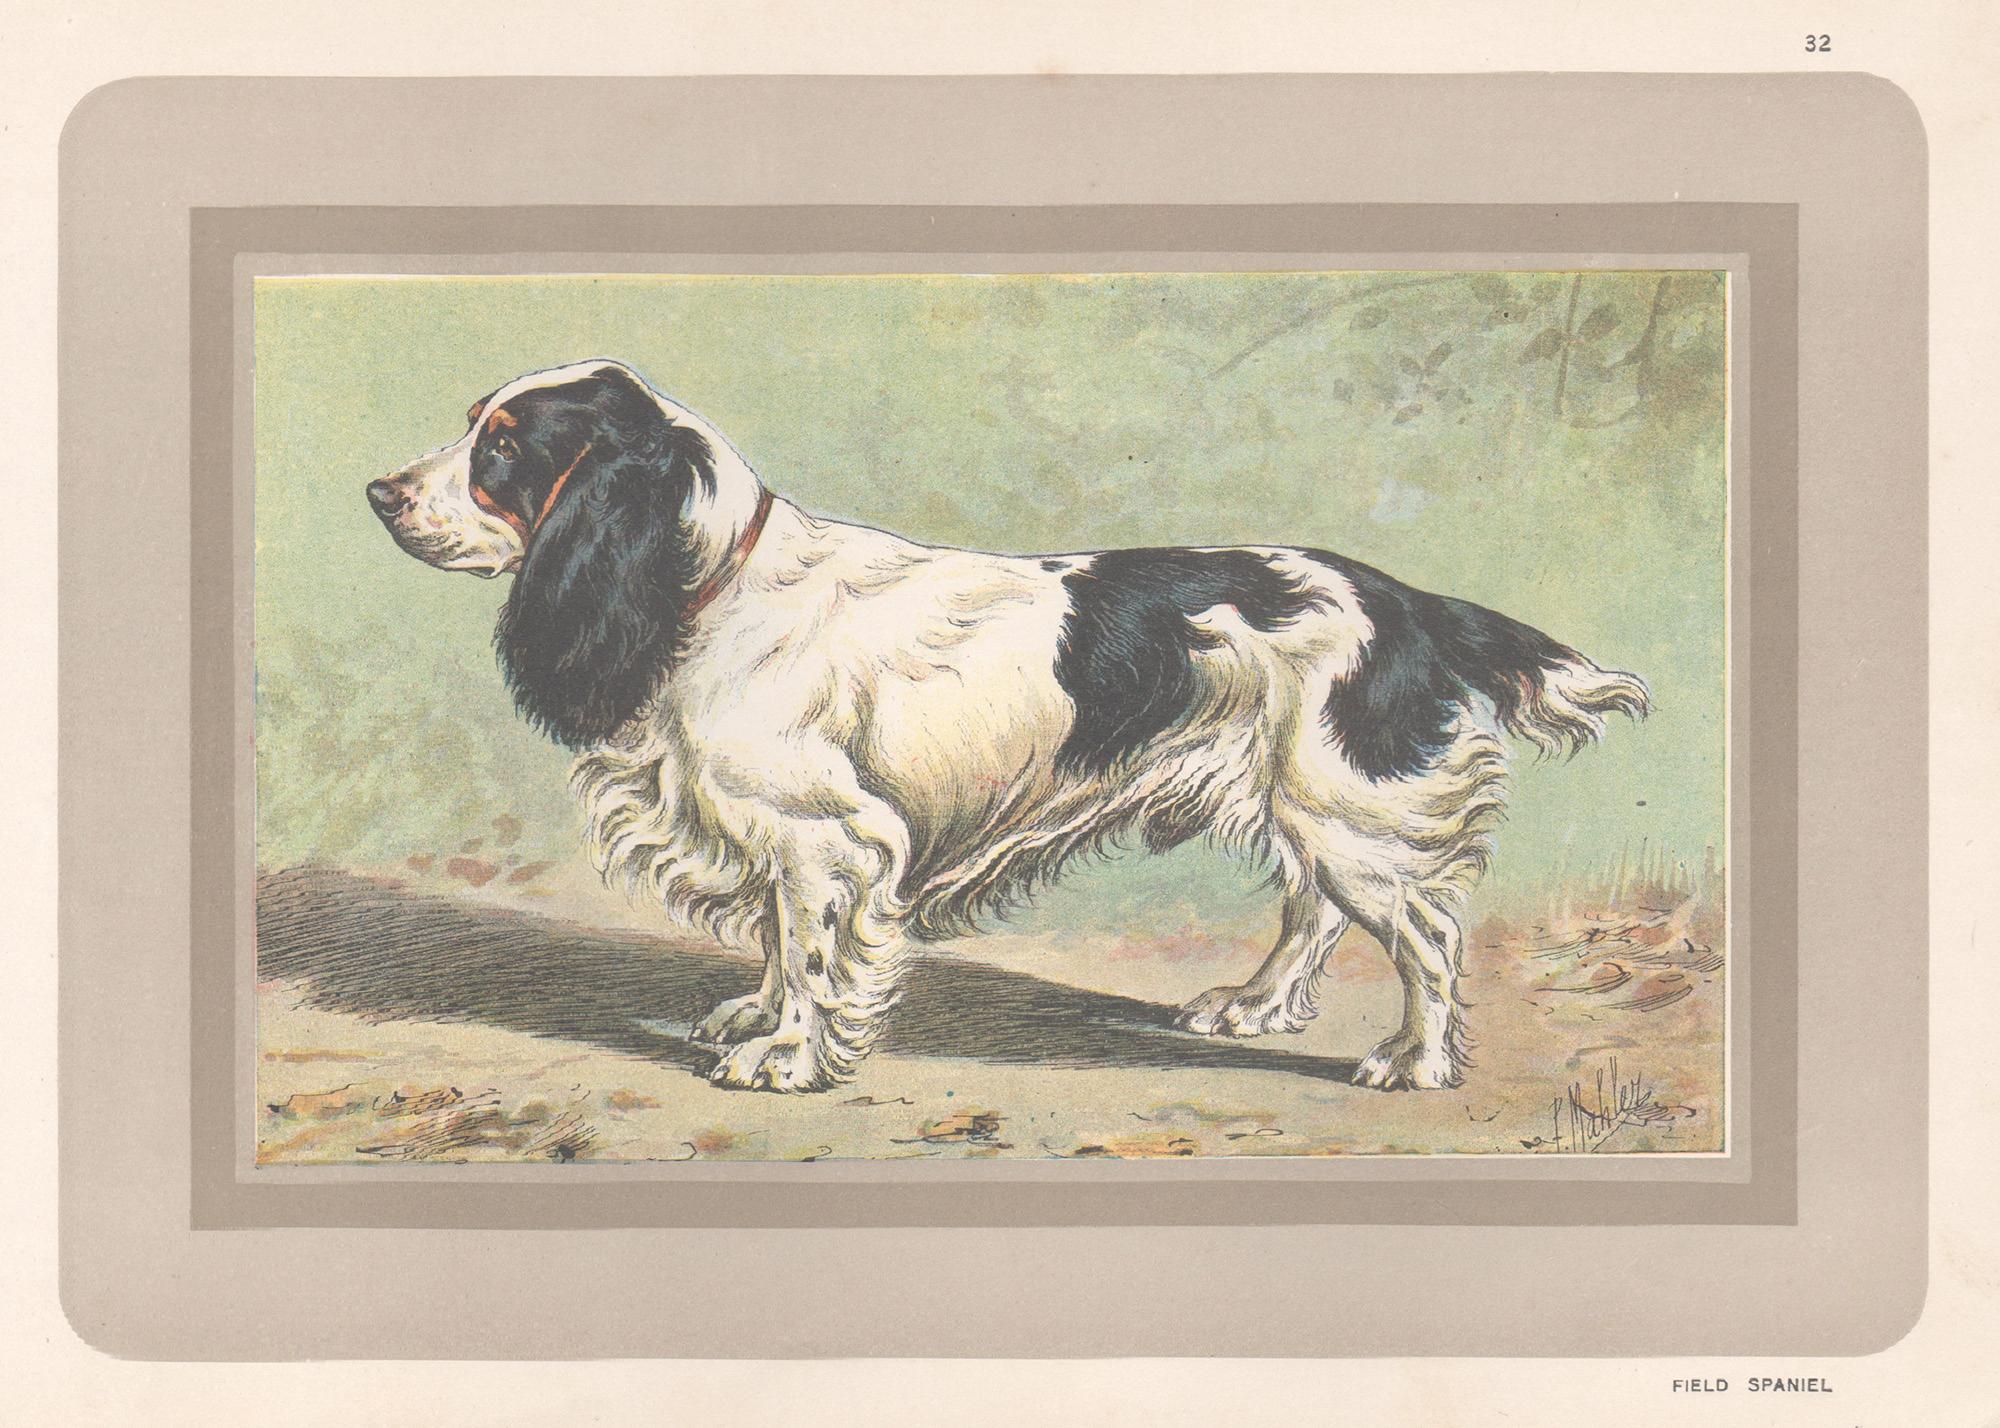 Animal Print P. Mahler - Impression chromolithologique d'un épagneul de champ, chien de chasse français, années 1930